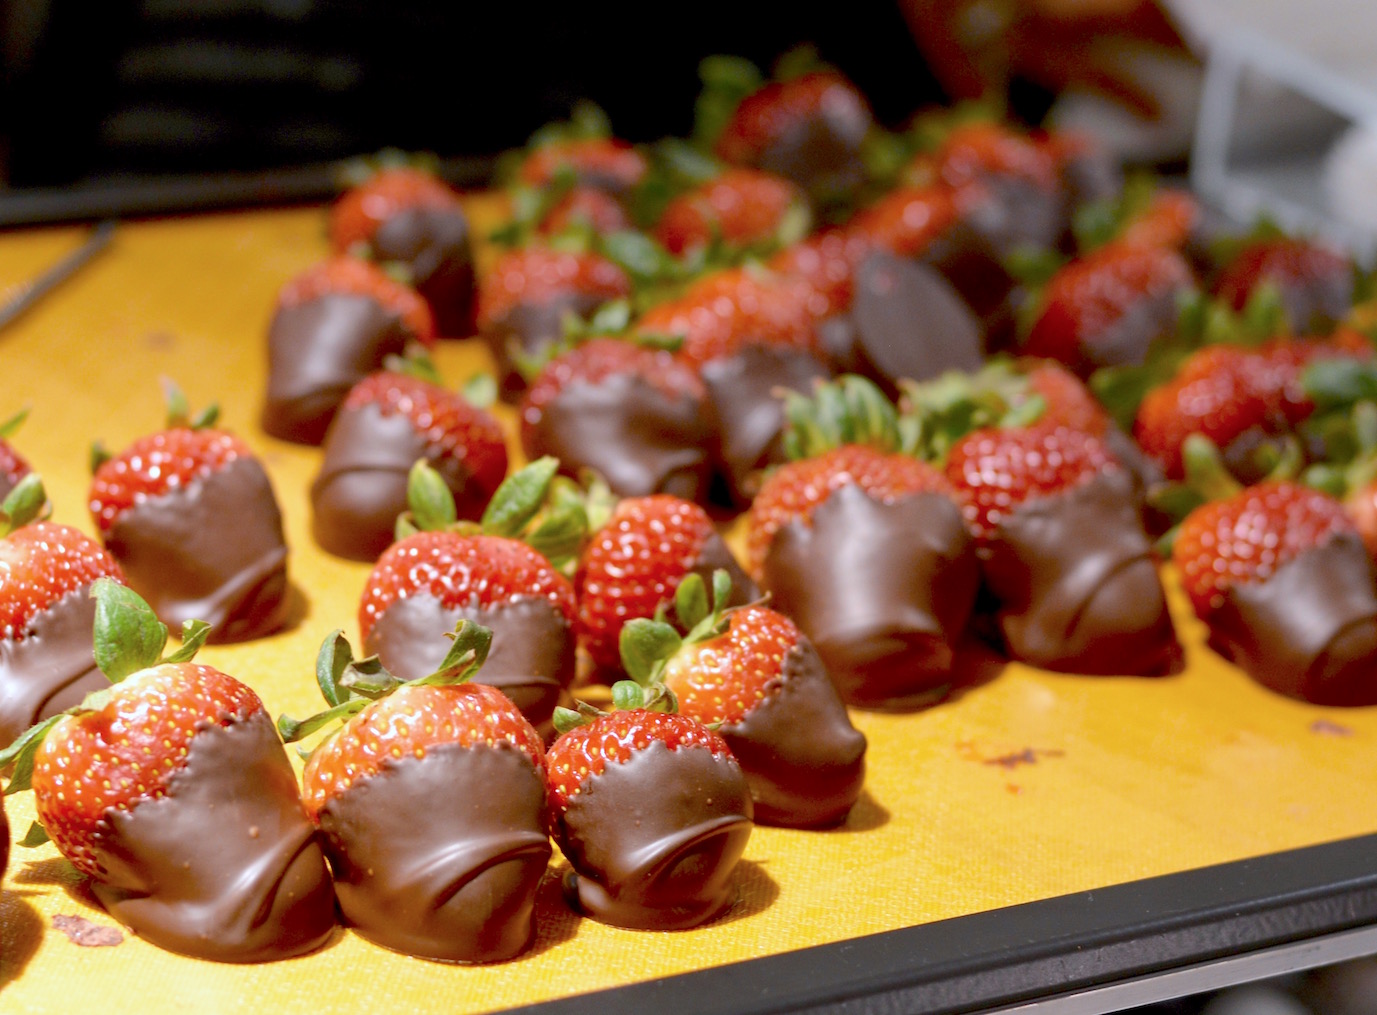 Godiva Chocolate Strawberries